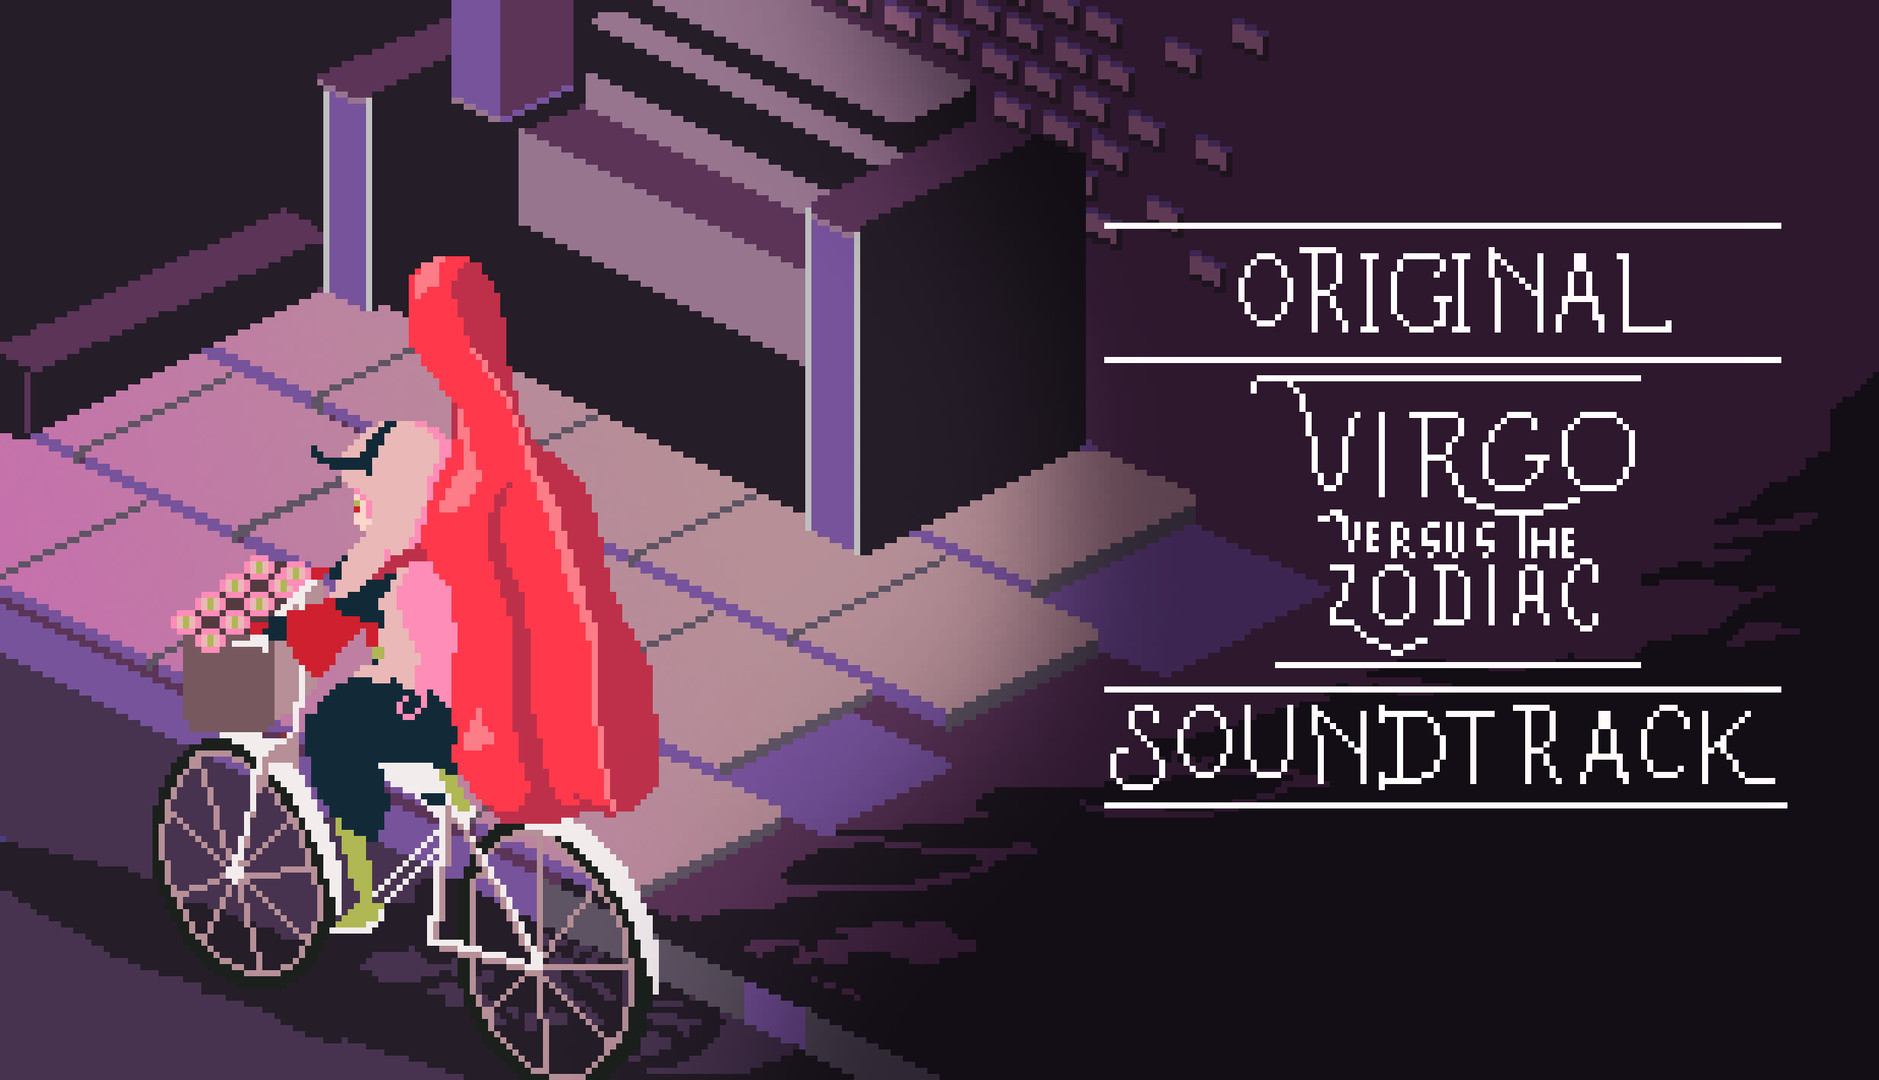 Virgo Versus The Zodiac - Soundtrack Featured Screenshot #1